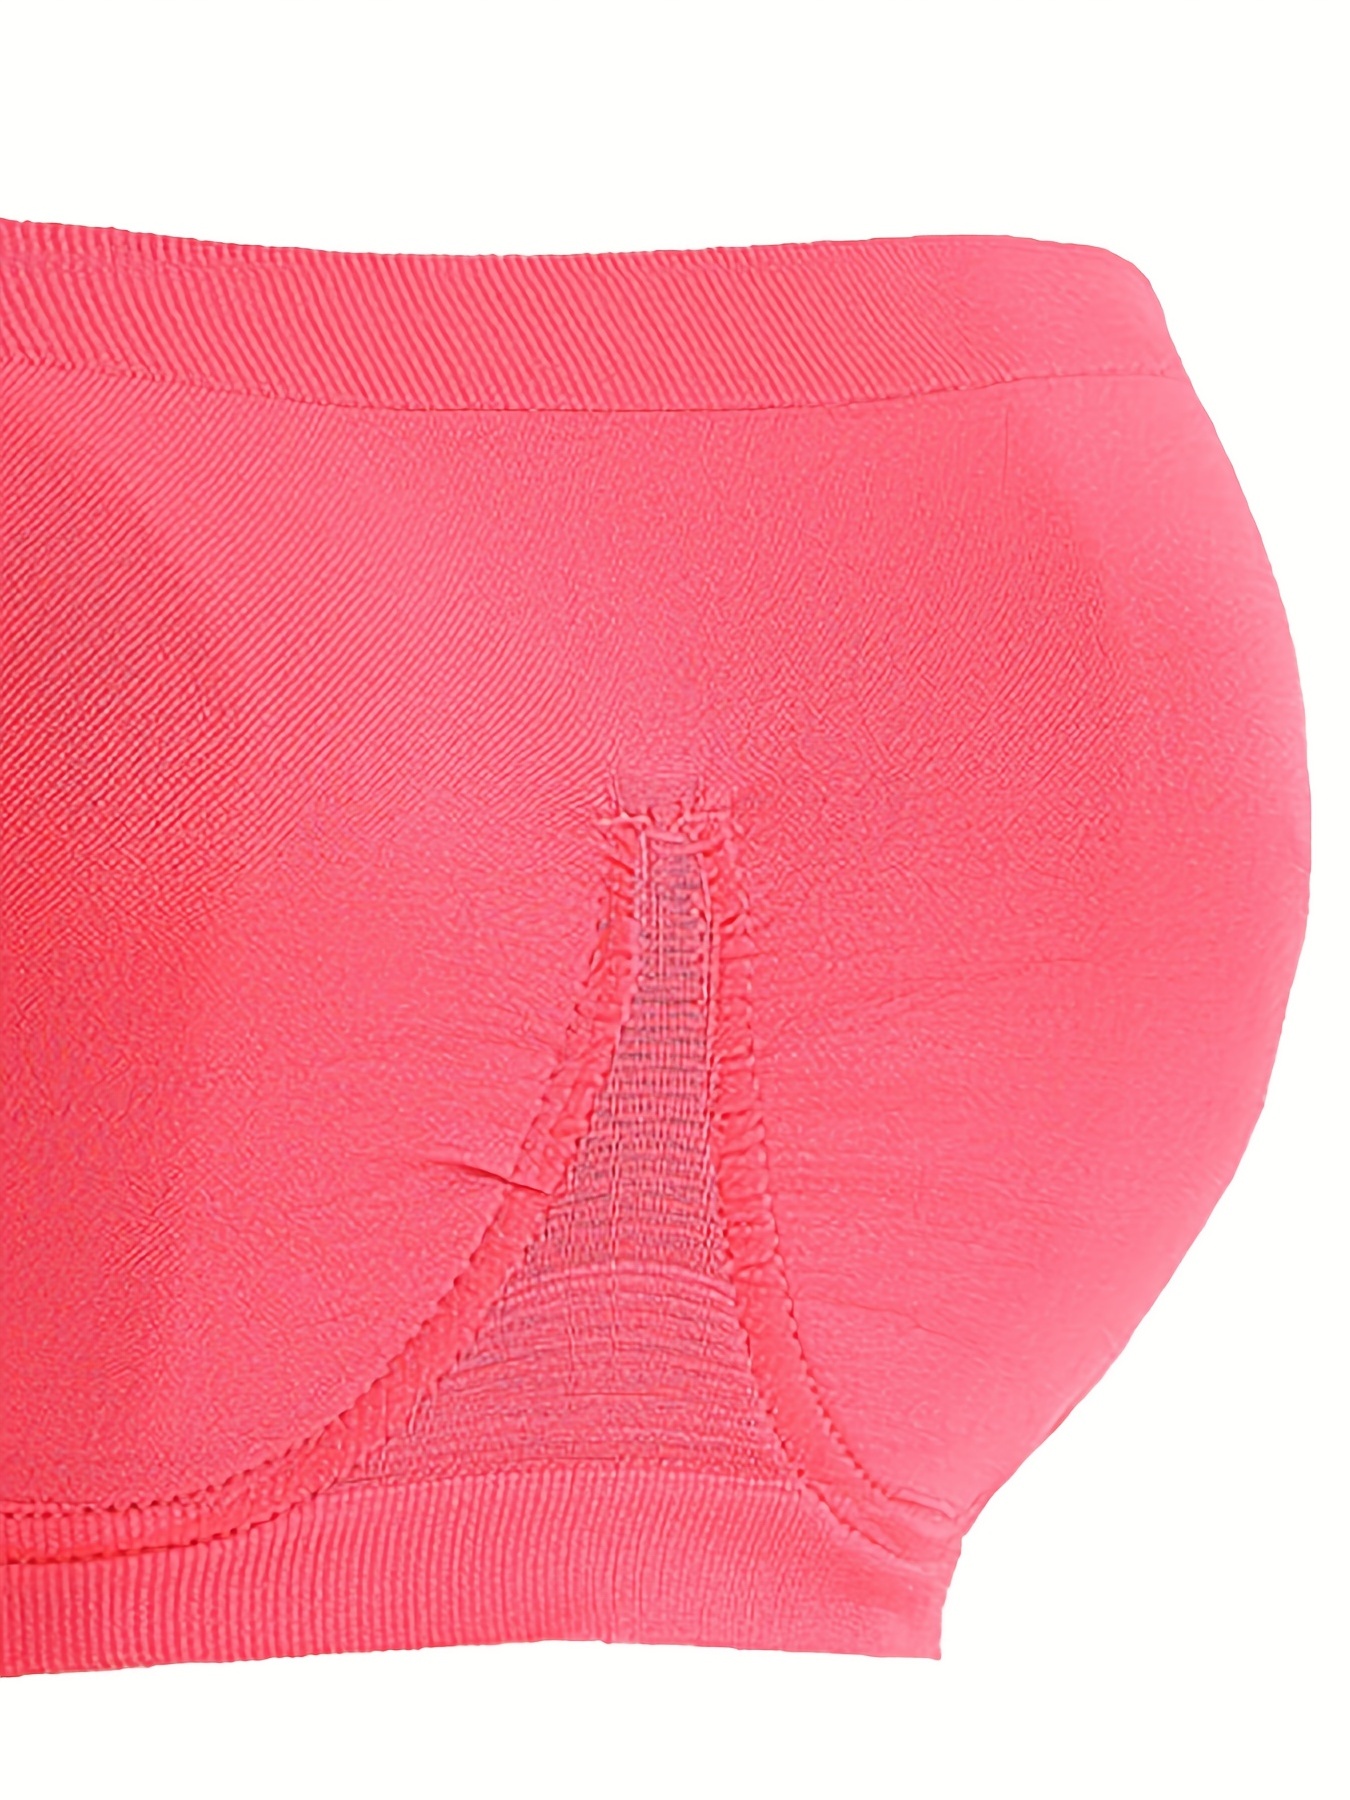 ESSSUT Underwear Womens Women's Stretch Strapless Bra,Summer Bandeau Bra,Plus  Size Strapless Bra,Comfort Wireless Bra Lingerie For Women S 